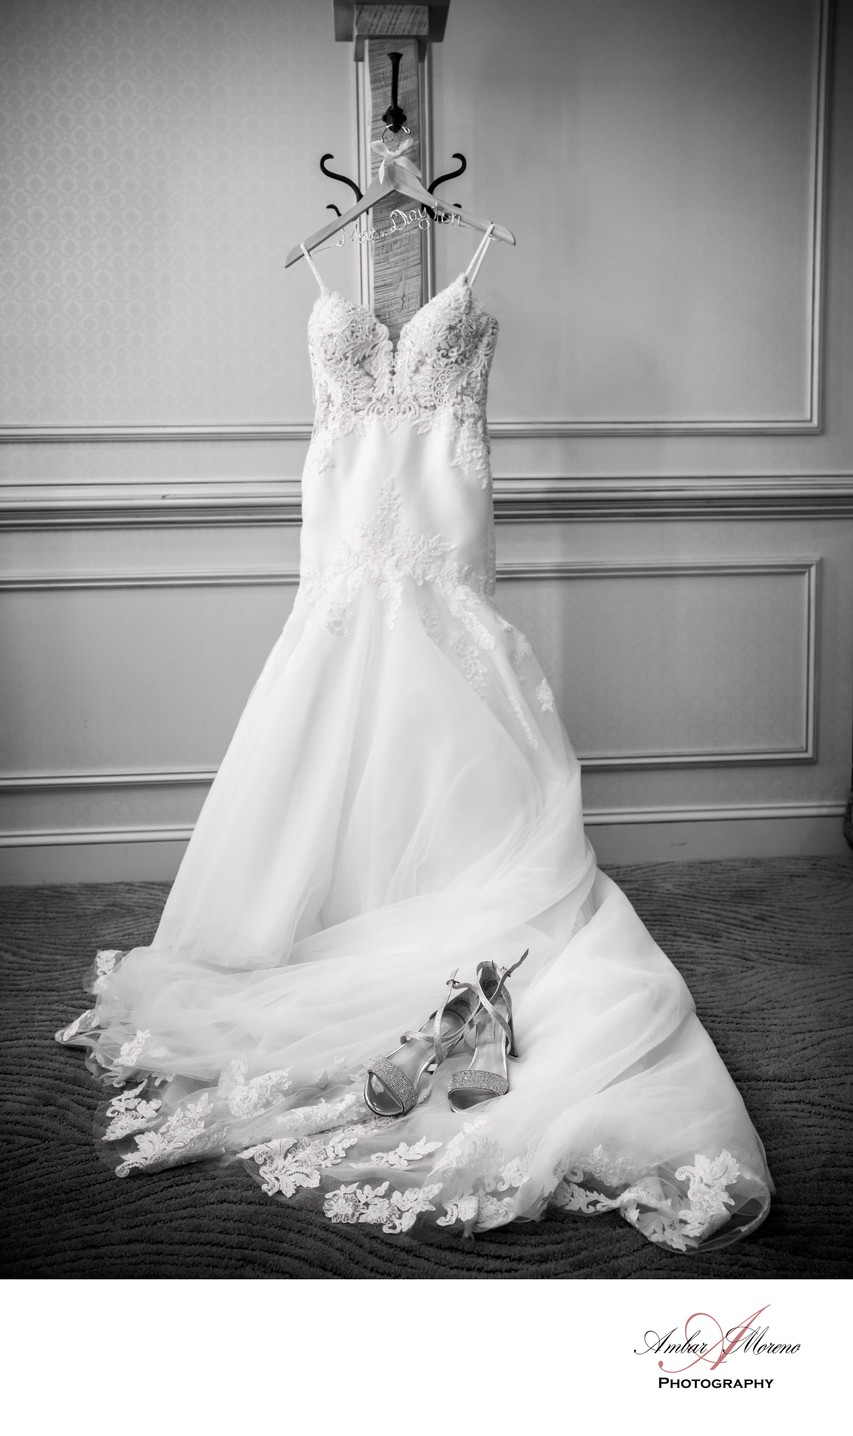 Details | Wedding Gown